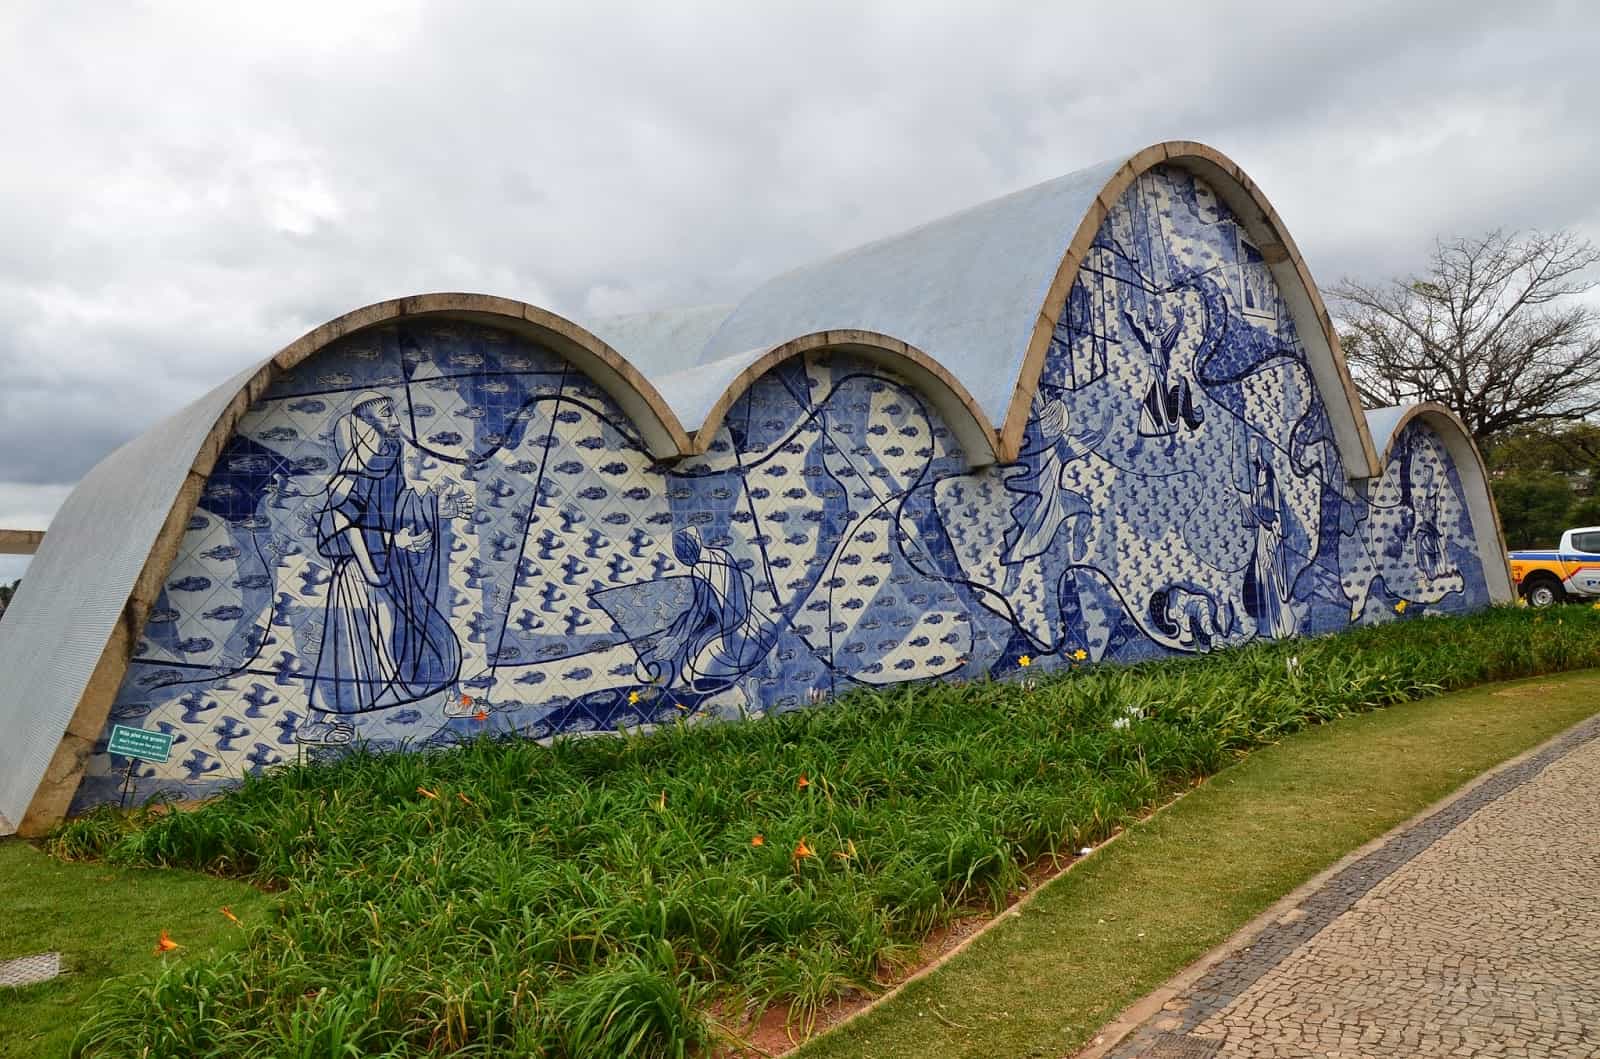 Pampulha Complex in Belo Horizonte, Minas Gerais - Oscar Niemeyer